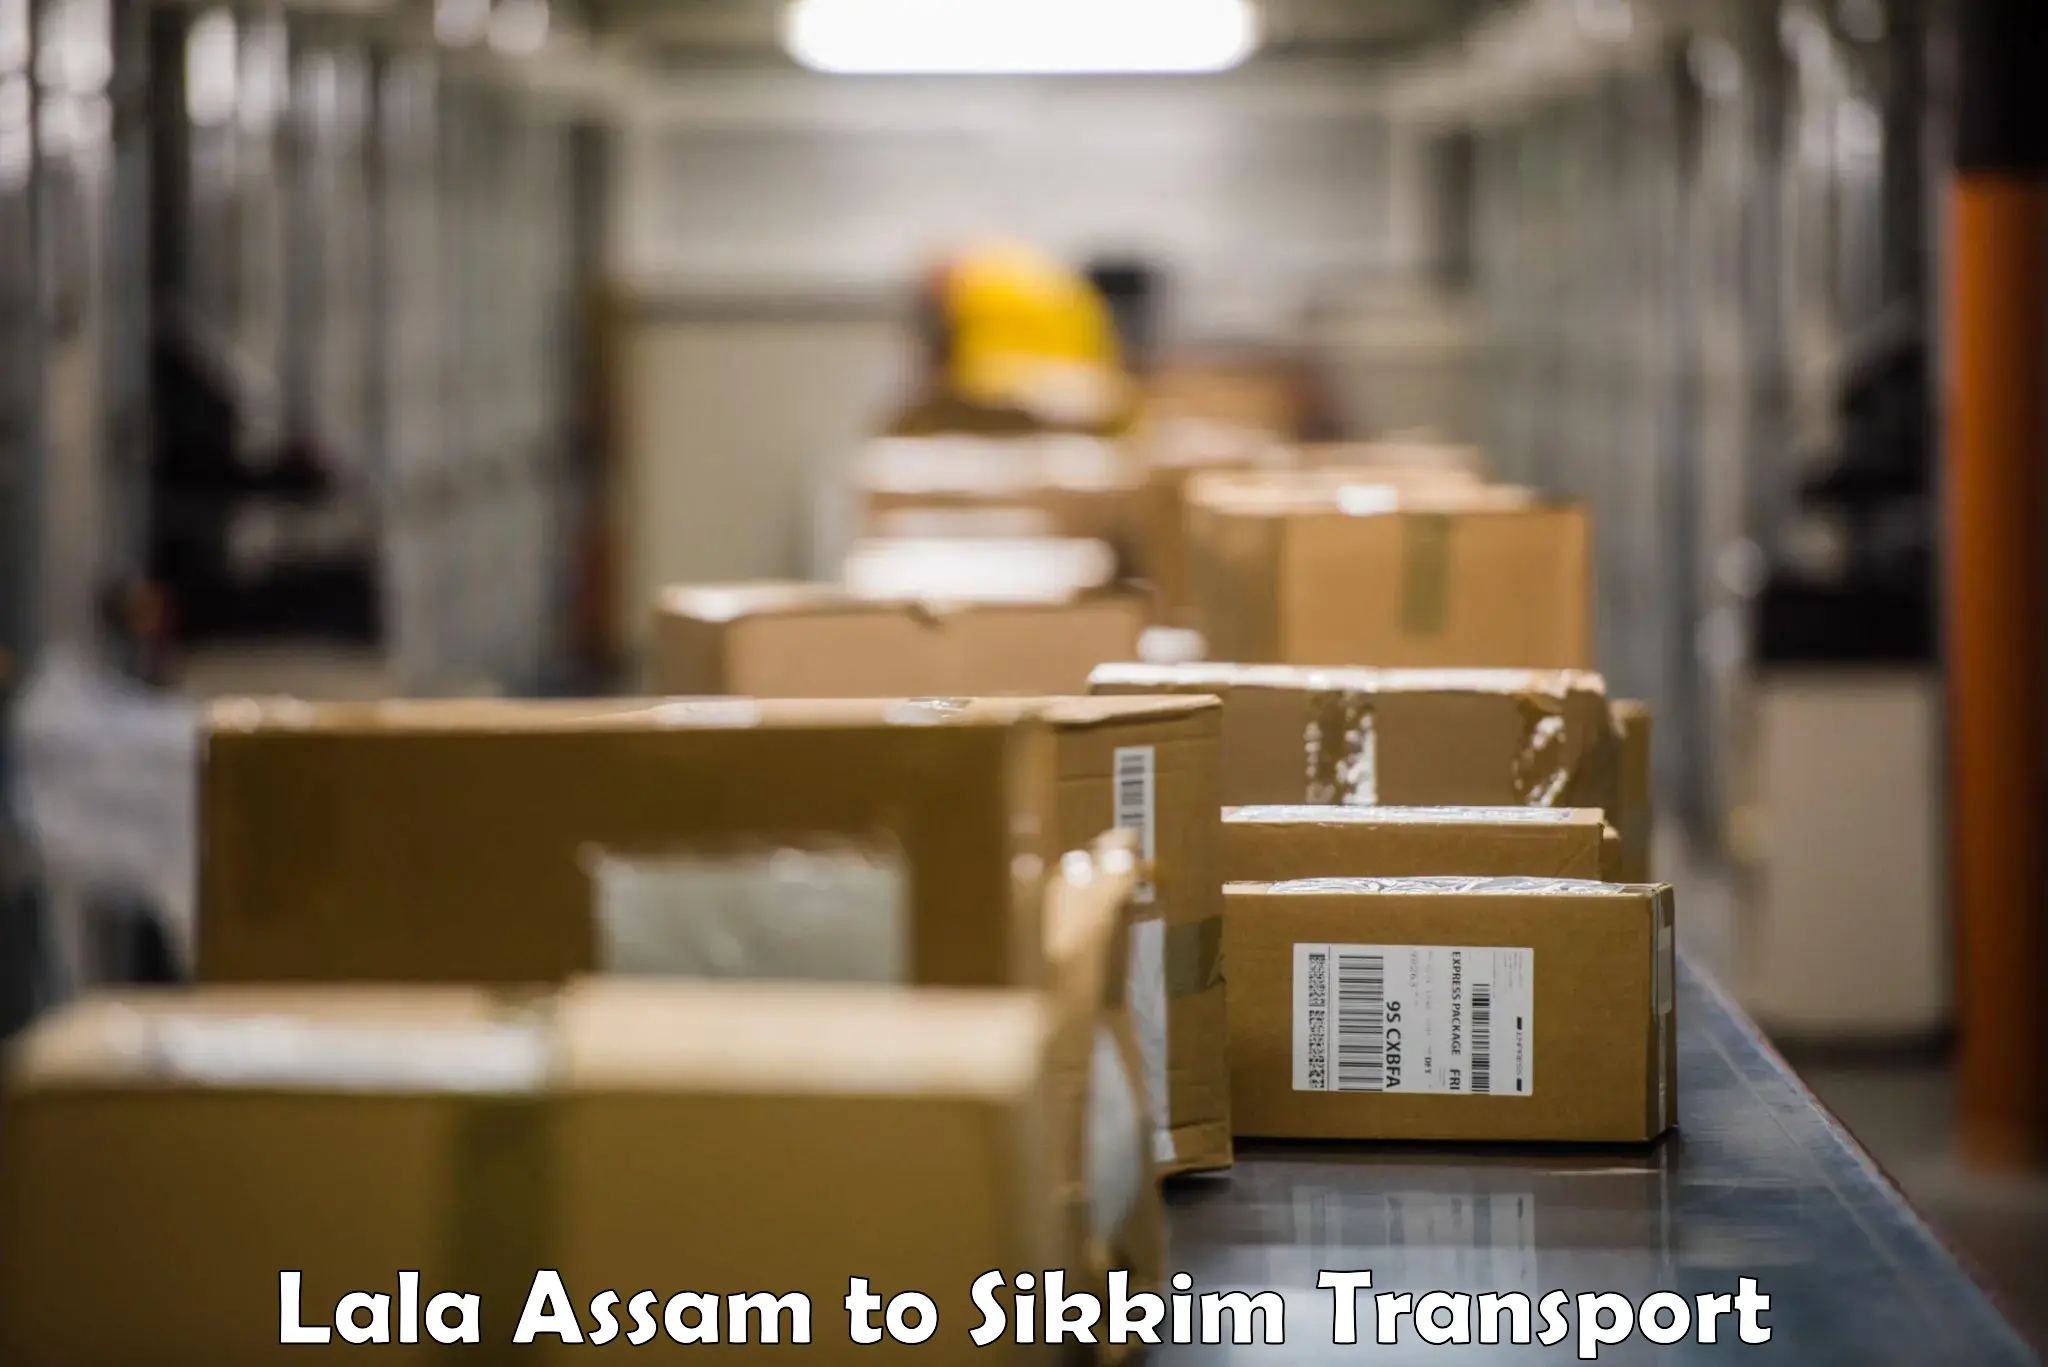 Nearby transport service Lala Assam to Gangtok